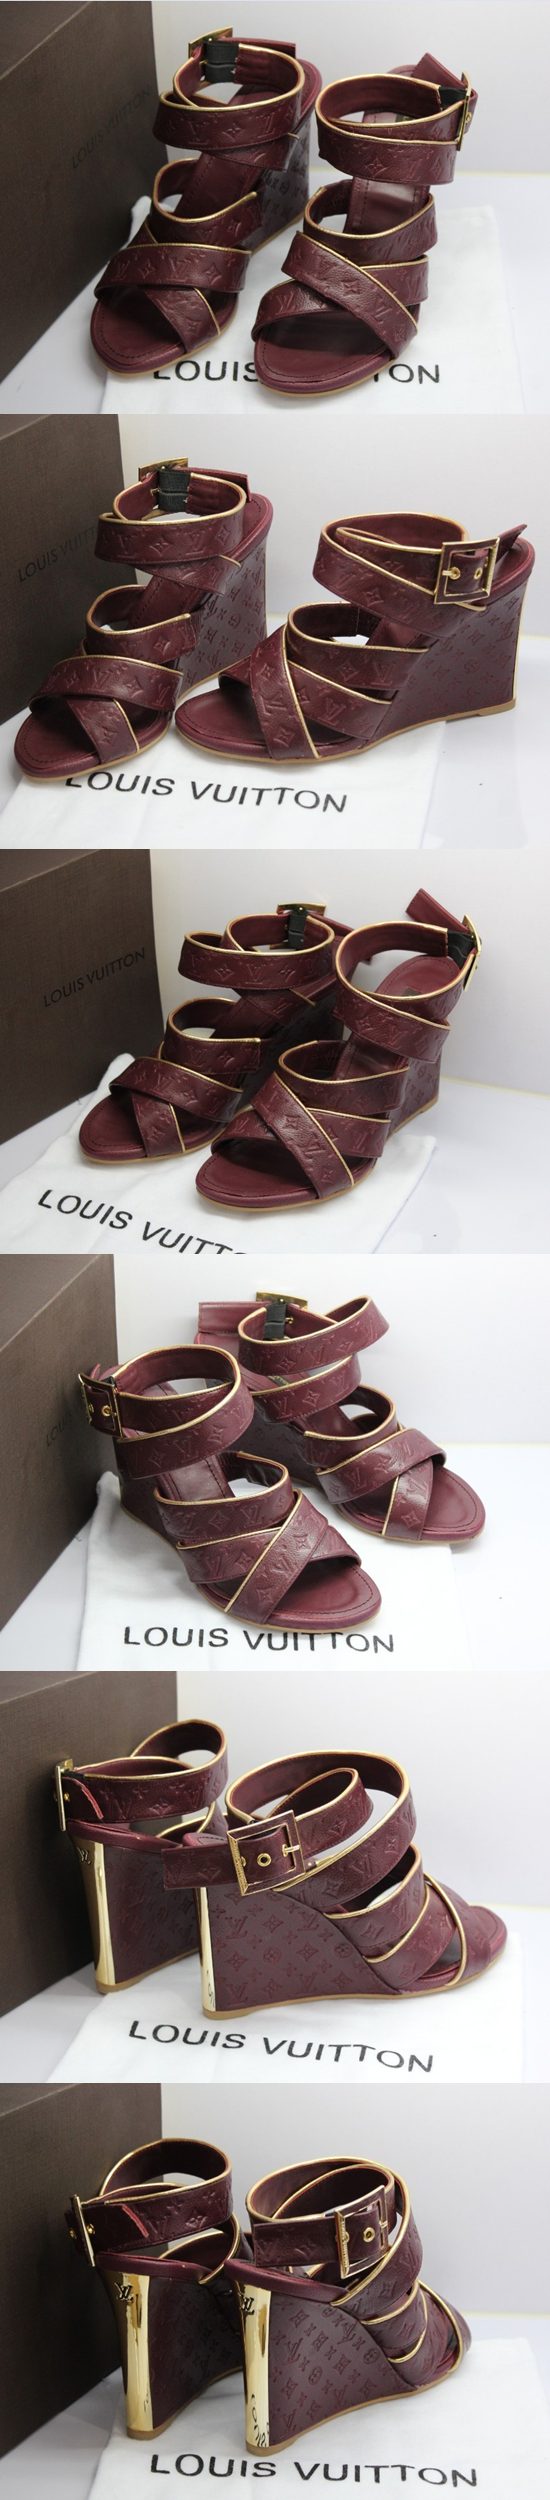 ブランド通販ルイヴィトン激安 靴 コピー LOUIS VUITTON 靴 偽物 サンダル LV65302激安屋-ブランドコピー